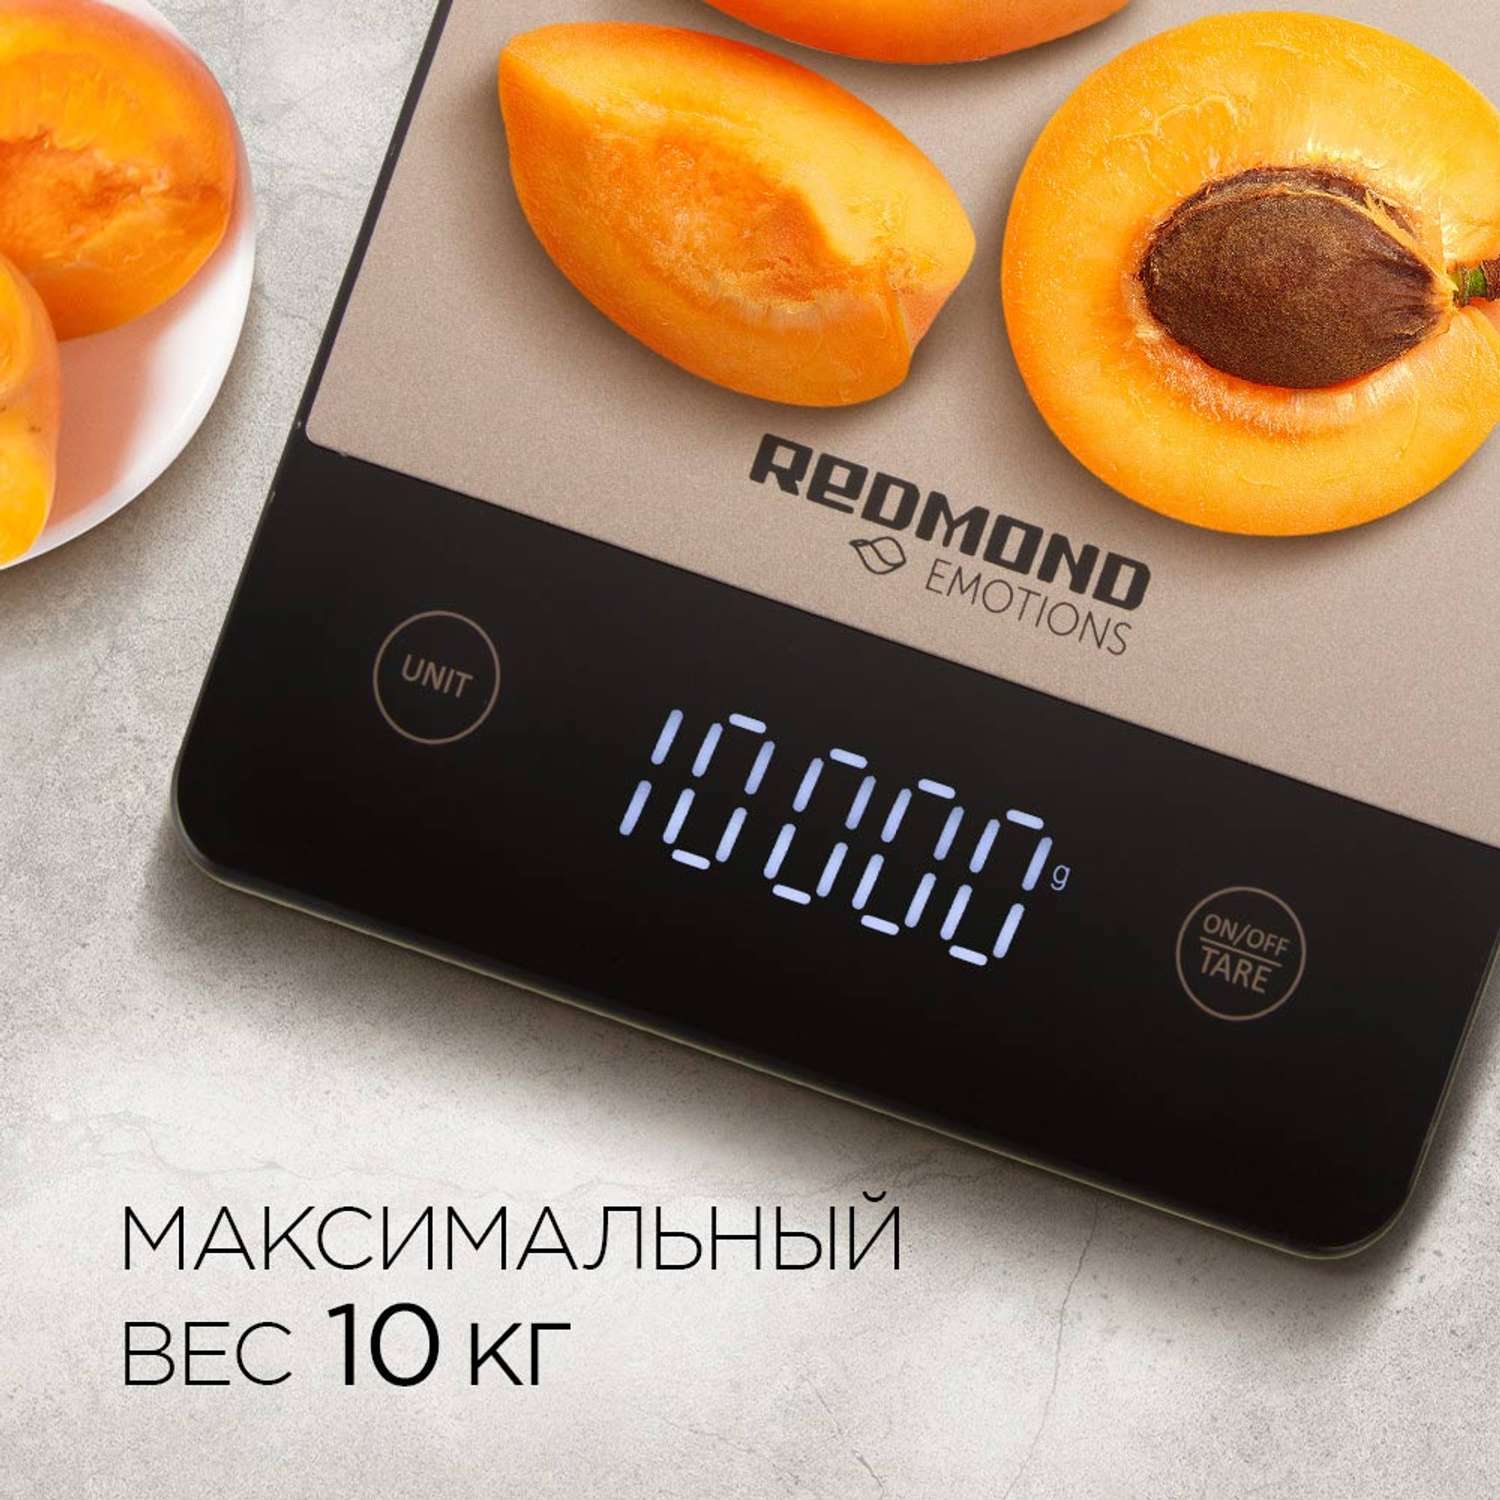 Весы кухонные Redmond RS-M769 - фото 2